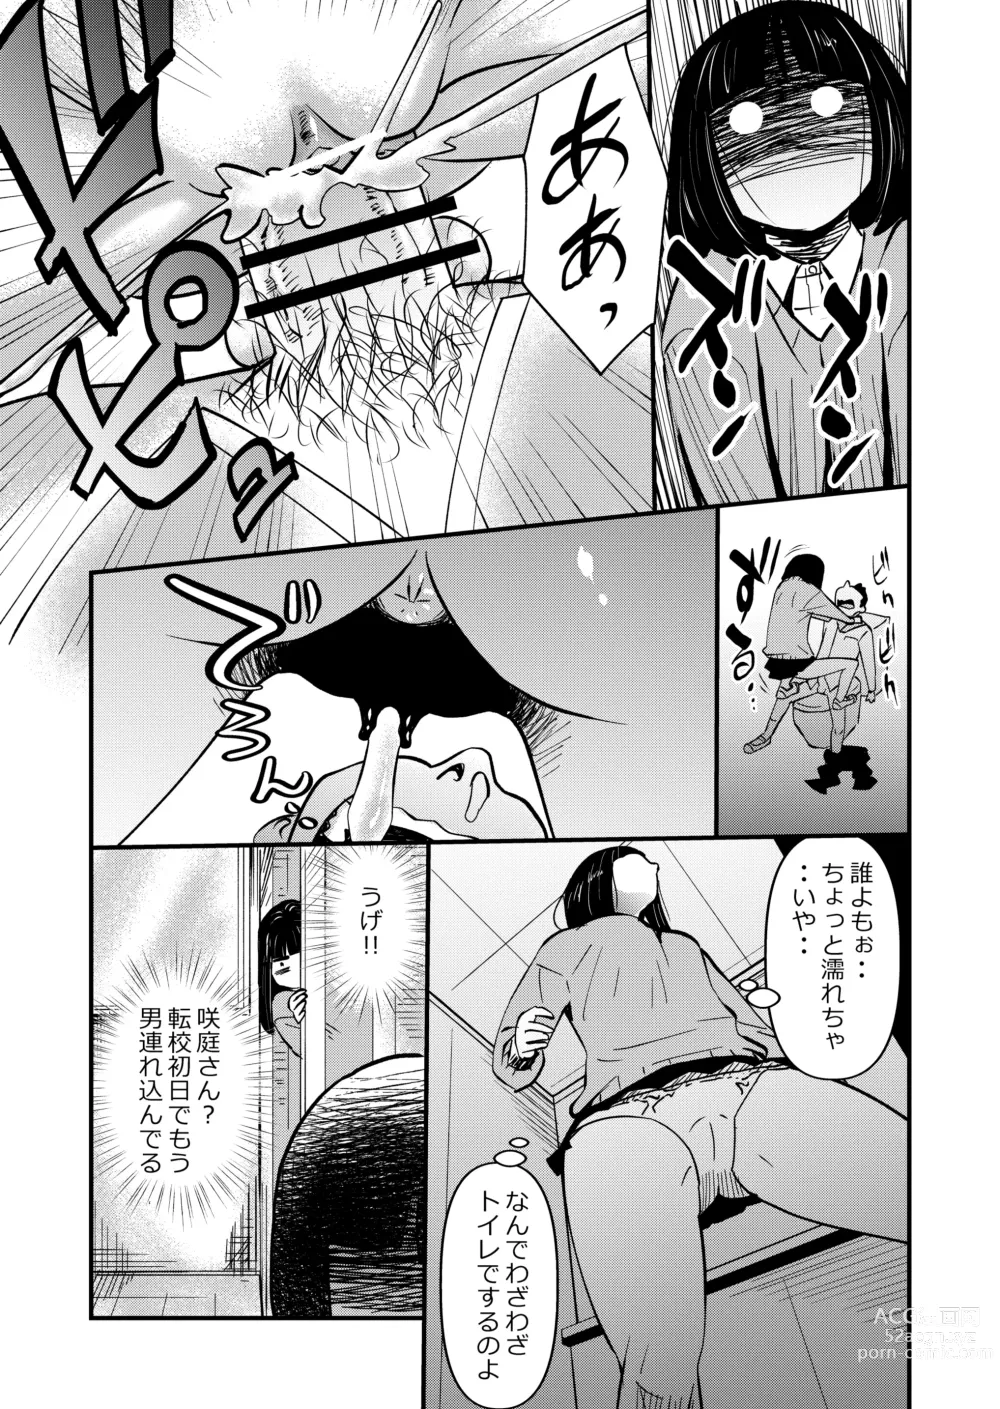 Page 5 of doujinshi Inma JK Succubus no Yabou